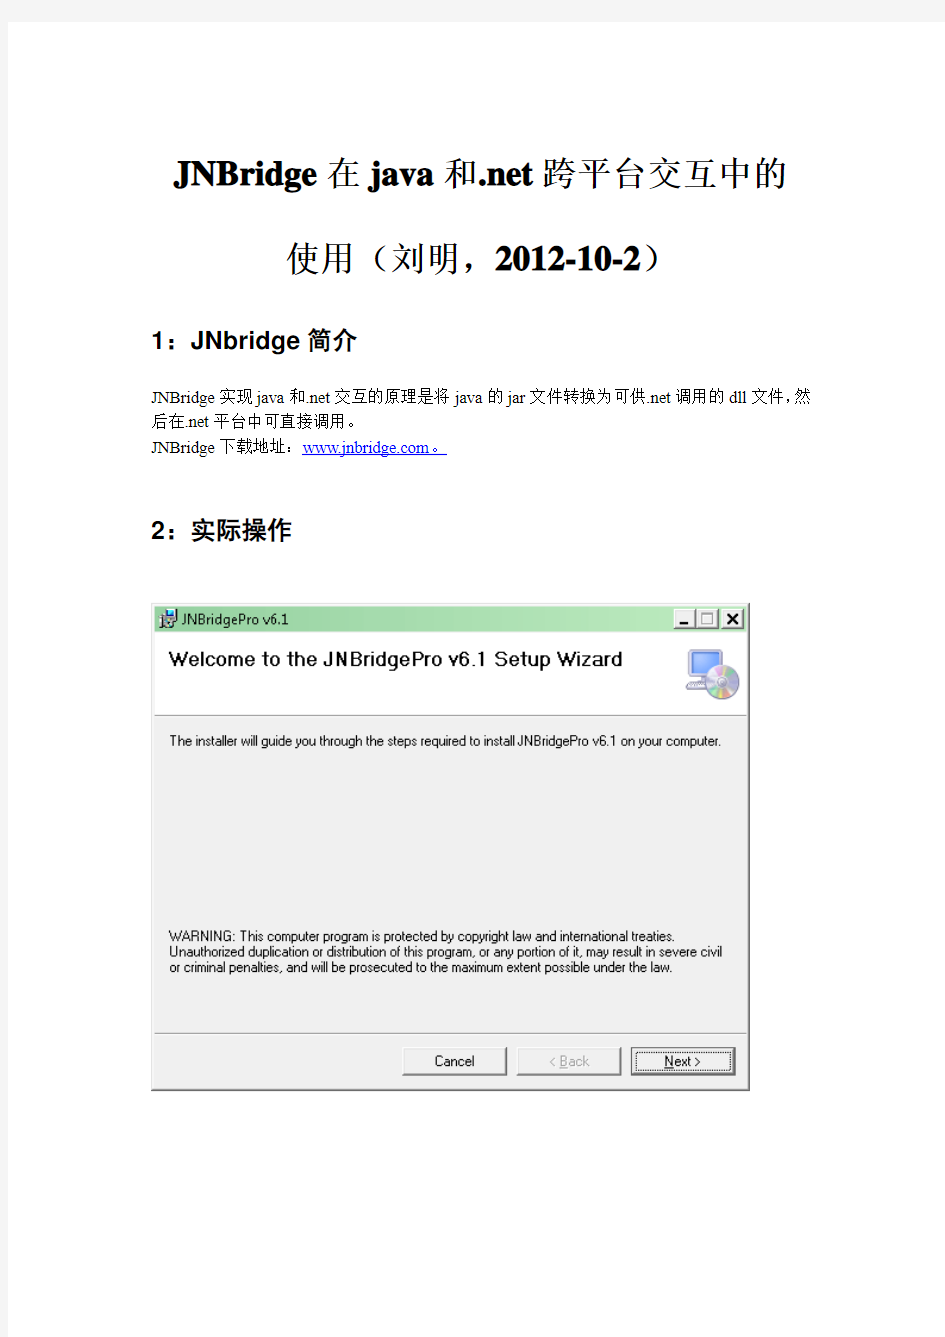 JNBridge在java和.net跨平台交互中的使用